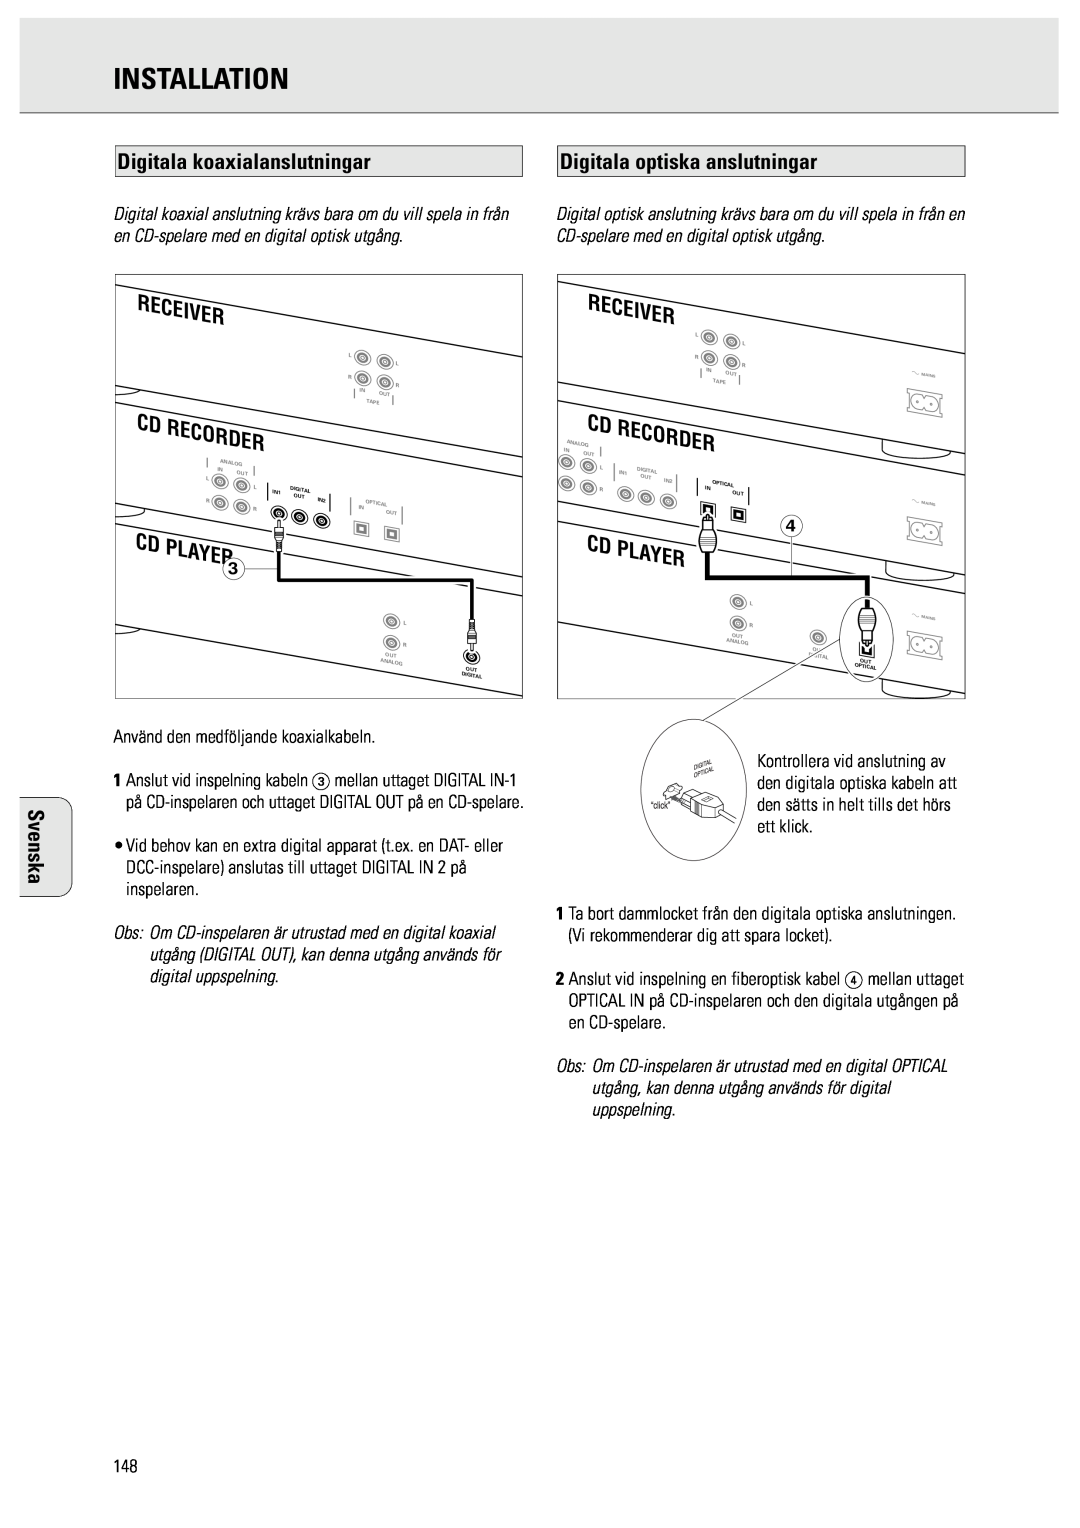 Philips CDR950/951 manual Digitala koaxialanslutningar, Digitala optiska anslutningar, Installation, Svenska 